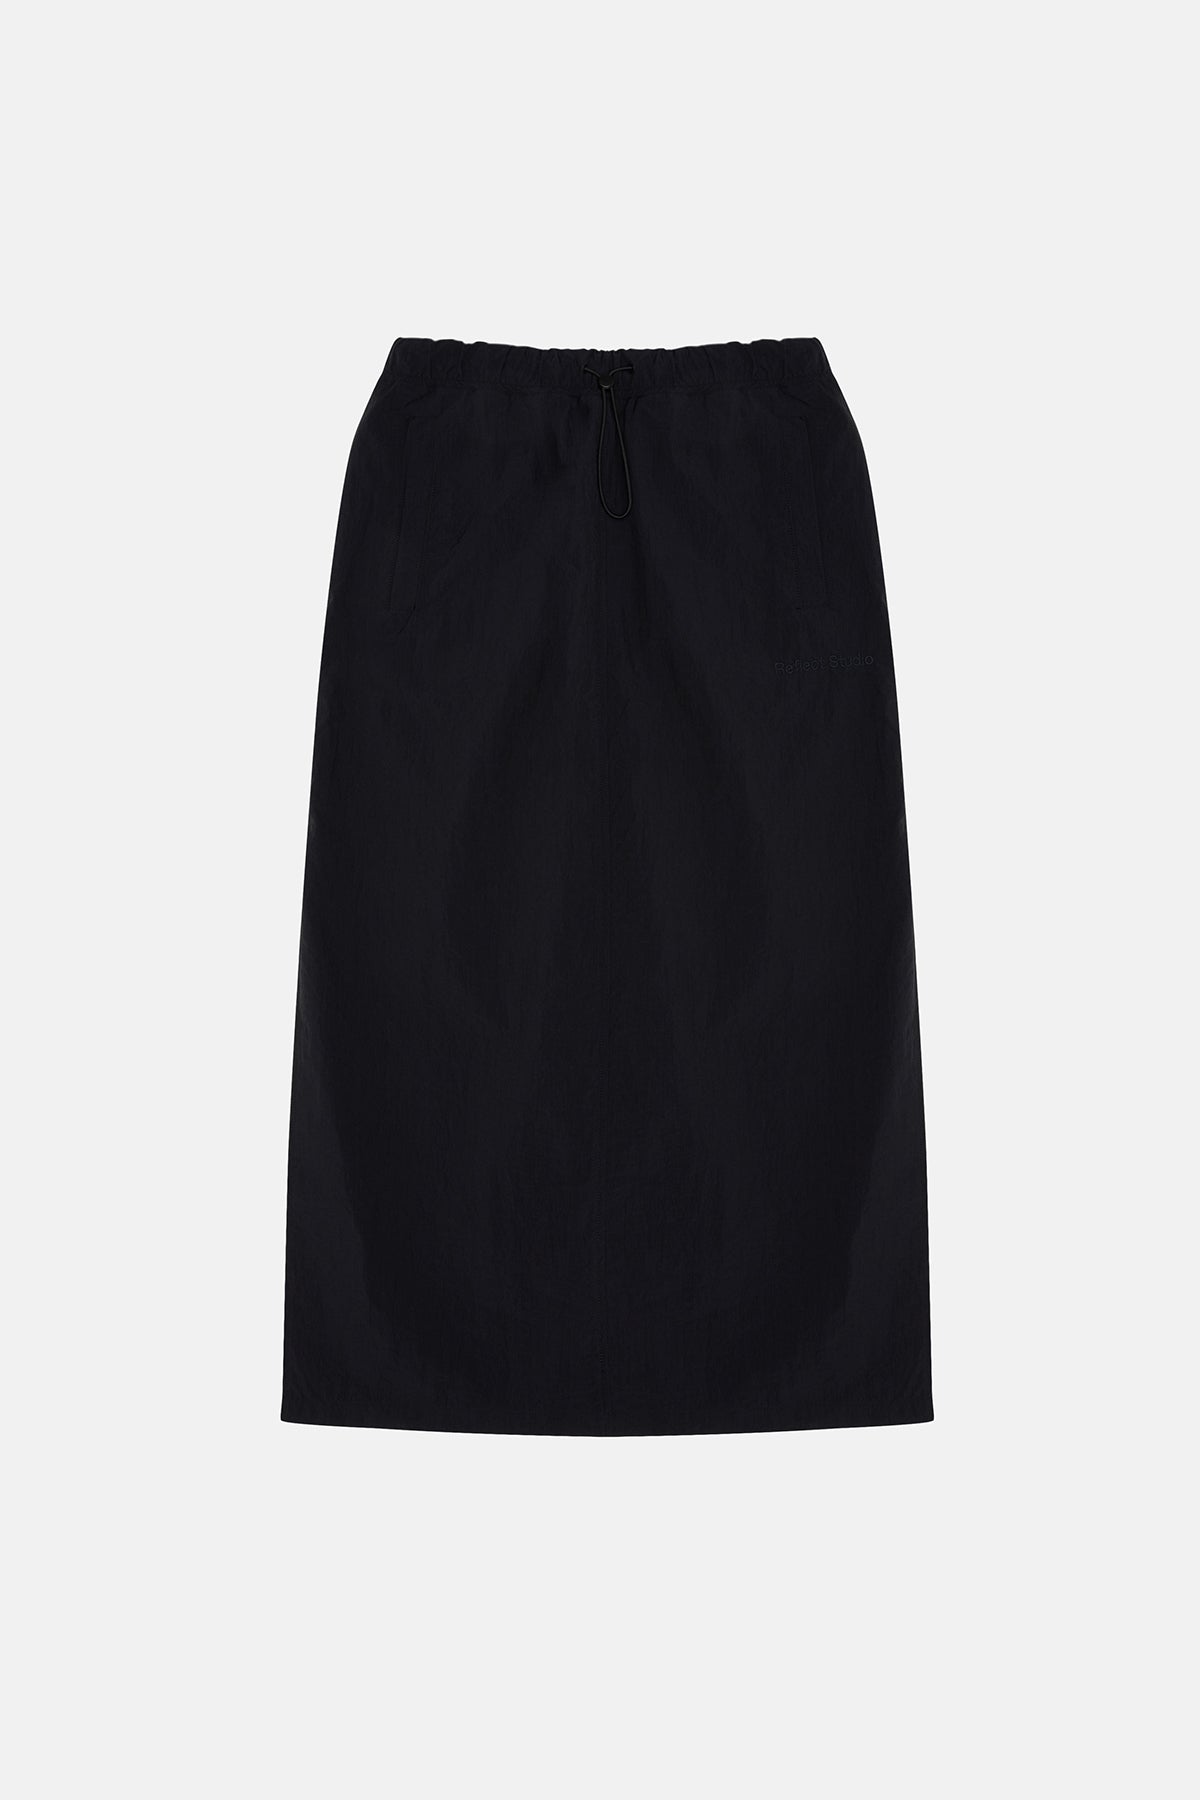 Long Skirt - Black